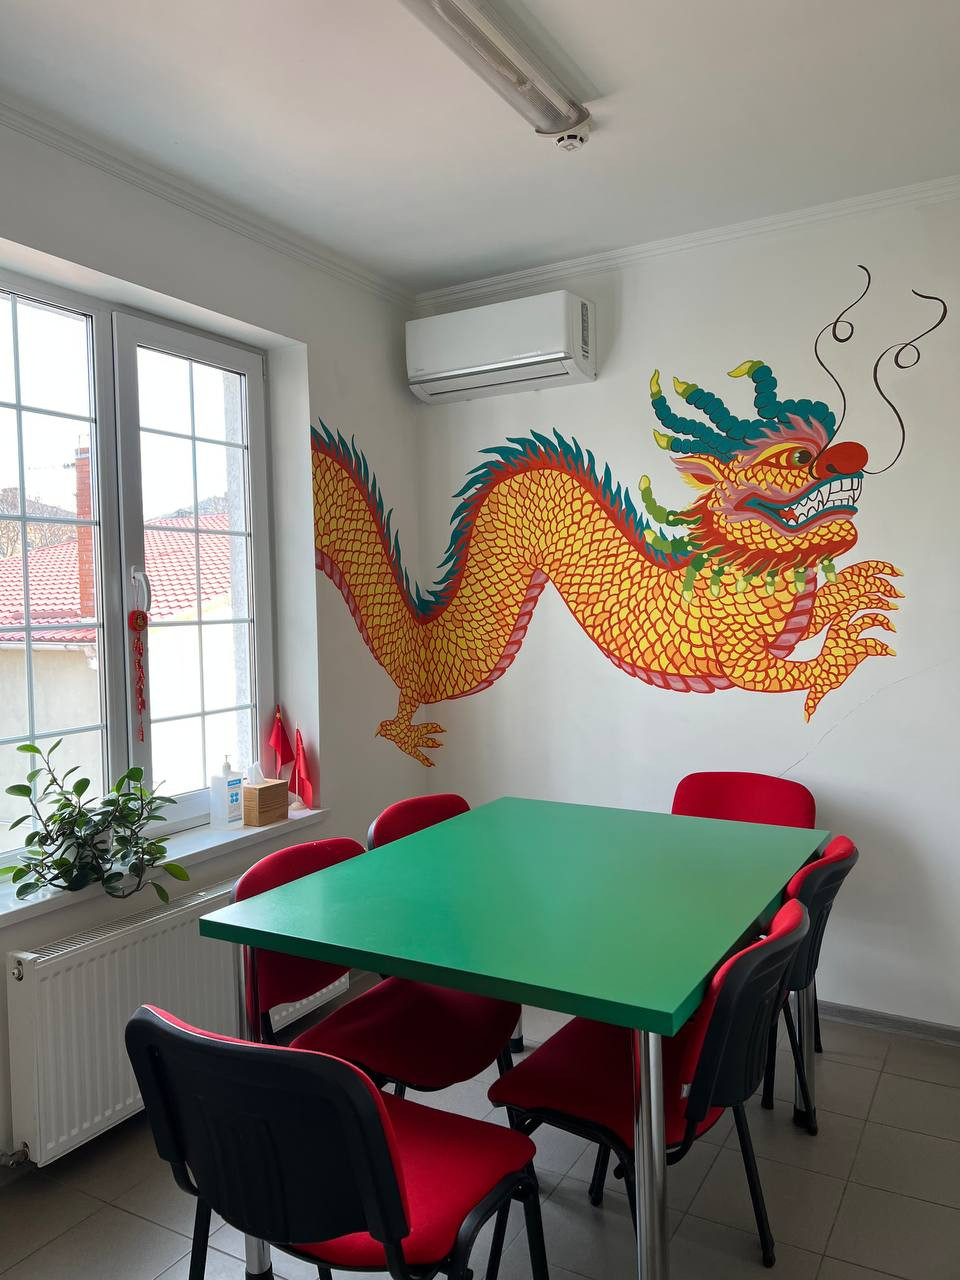 China classroom